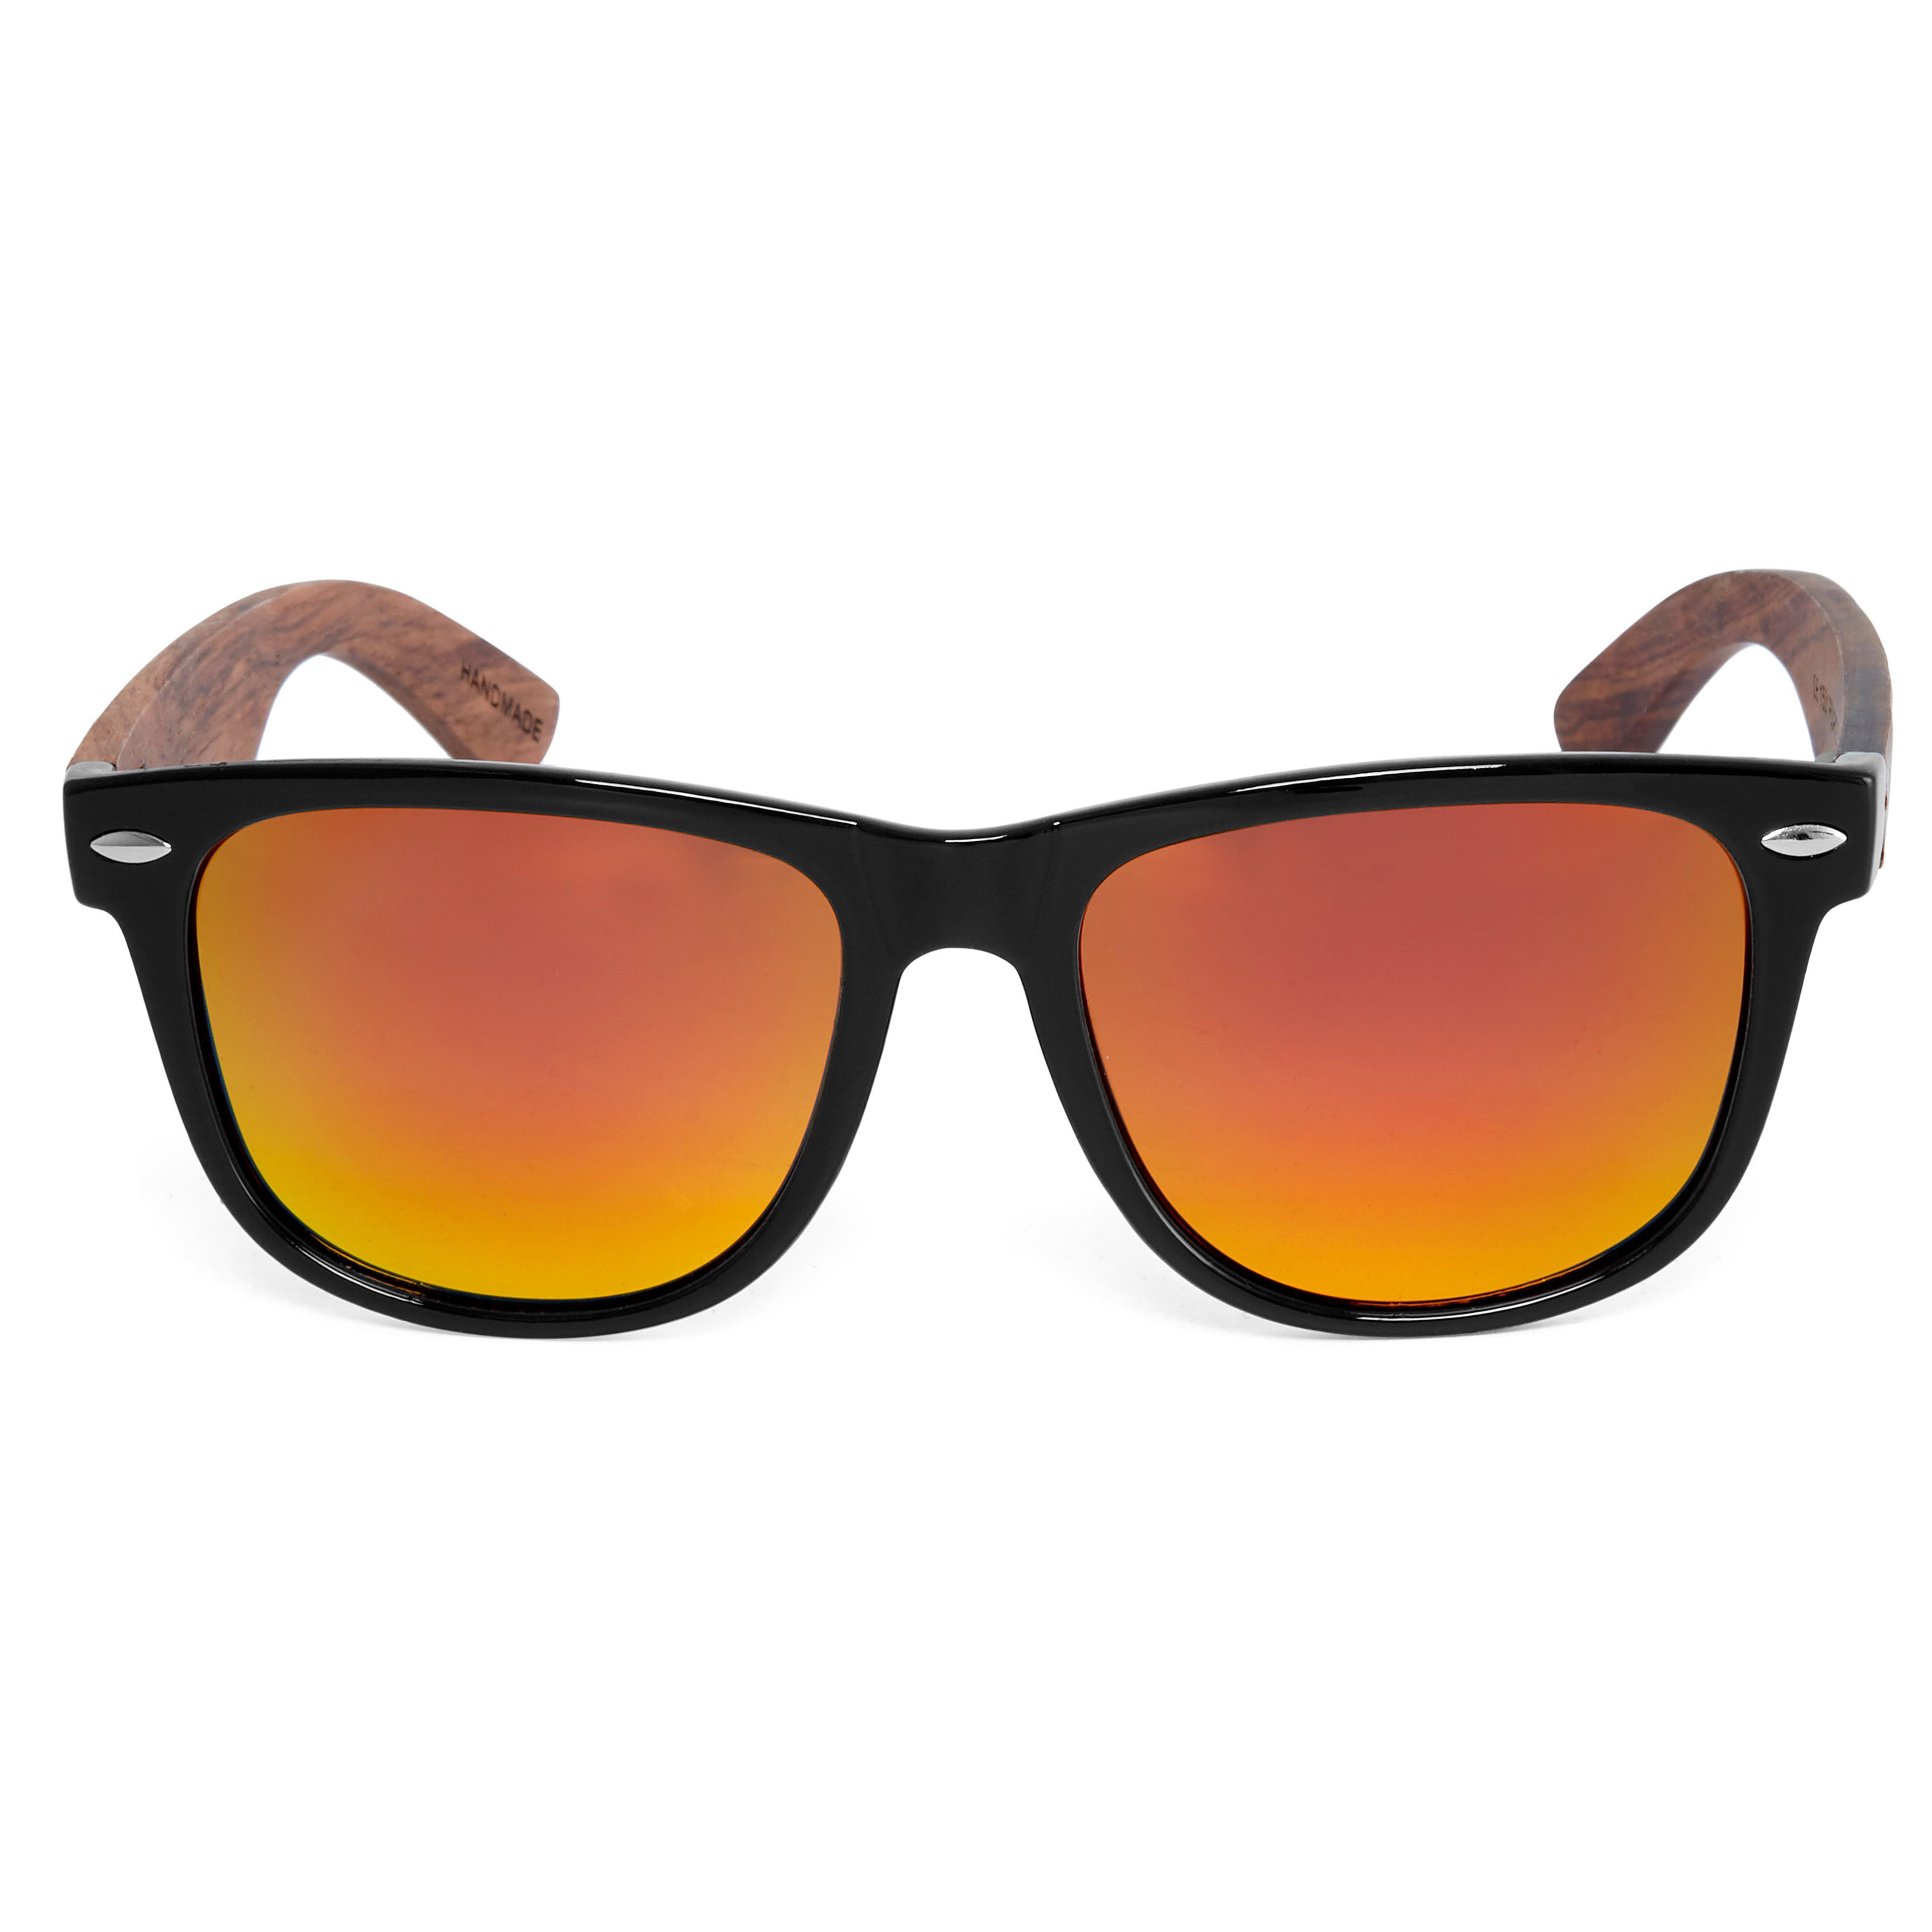 MIAROZ Gafas de Sol Polarizadas Hombre y Mujere,UV400 Protection,Gafas  Ligeras con Patillas de Madera